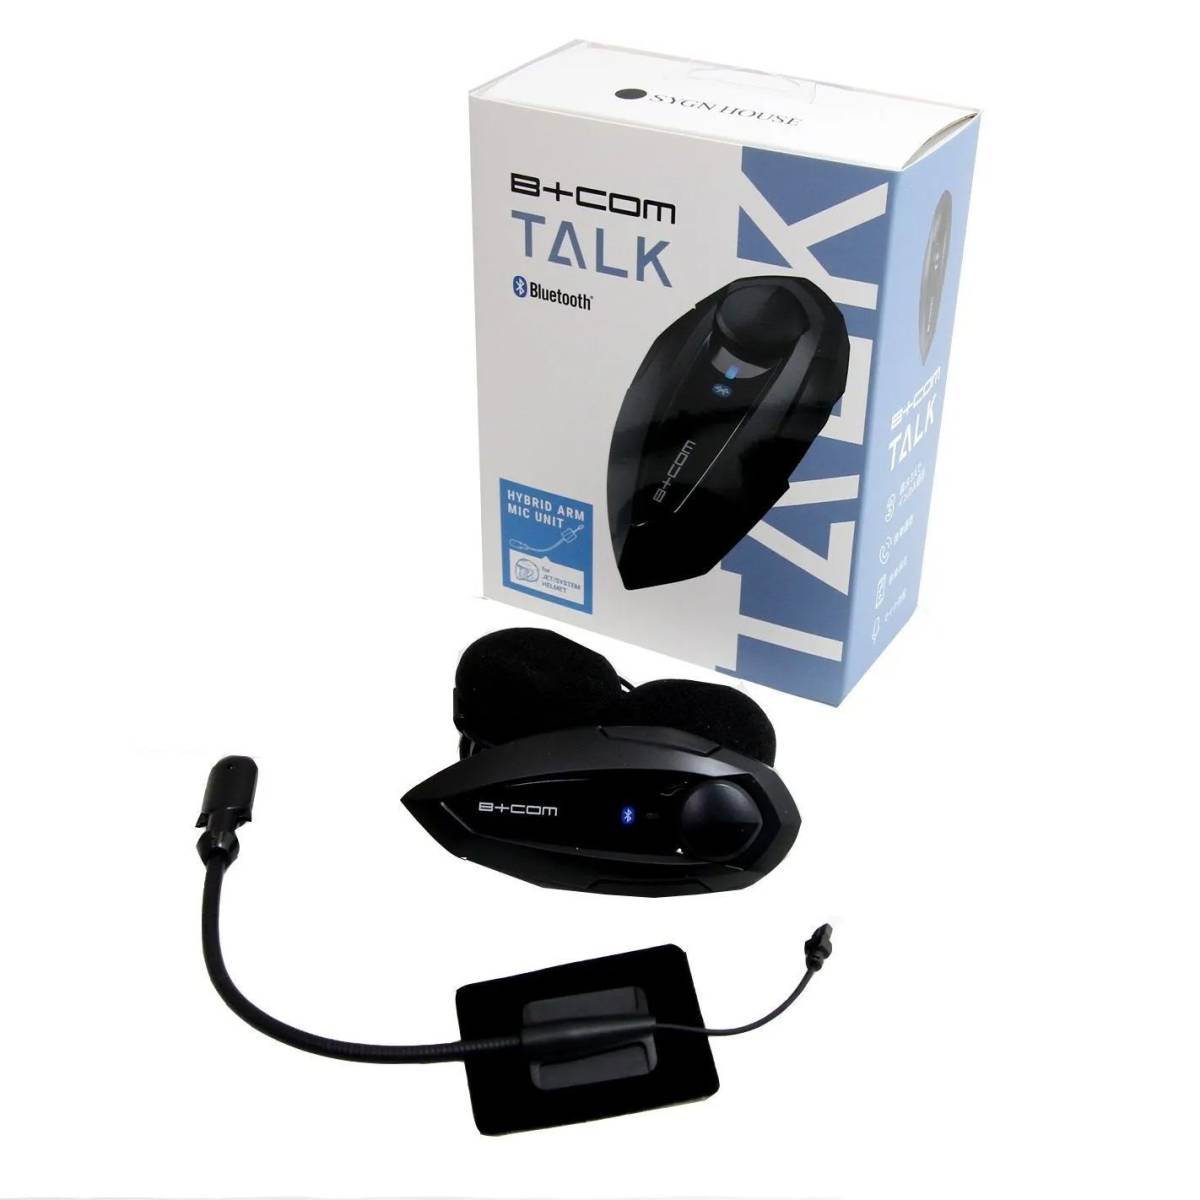 【新品・未開封】【アーム】B+COM TALK (ビーコム トーク) Bluetooth インカム 【3人同時通話】ハイブリッドアームマイクユニット ブラックの画像1